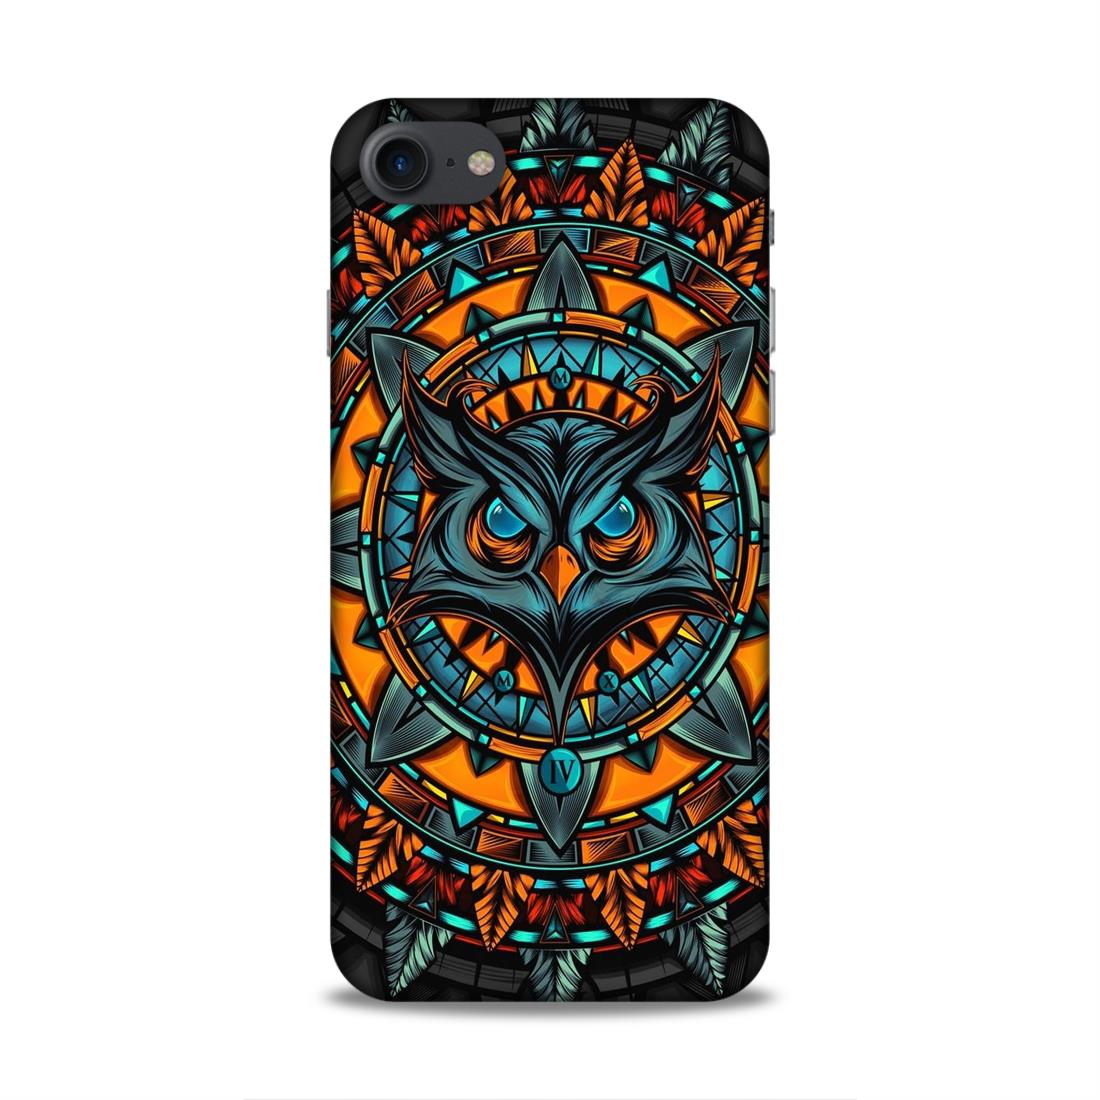 Owl Hard Back Case For Apple iPhone 7 / 8 / SE 2020